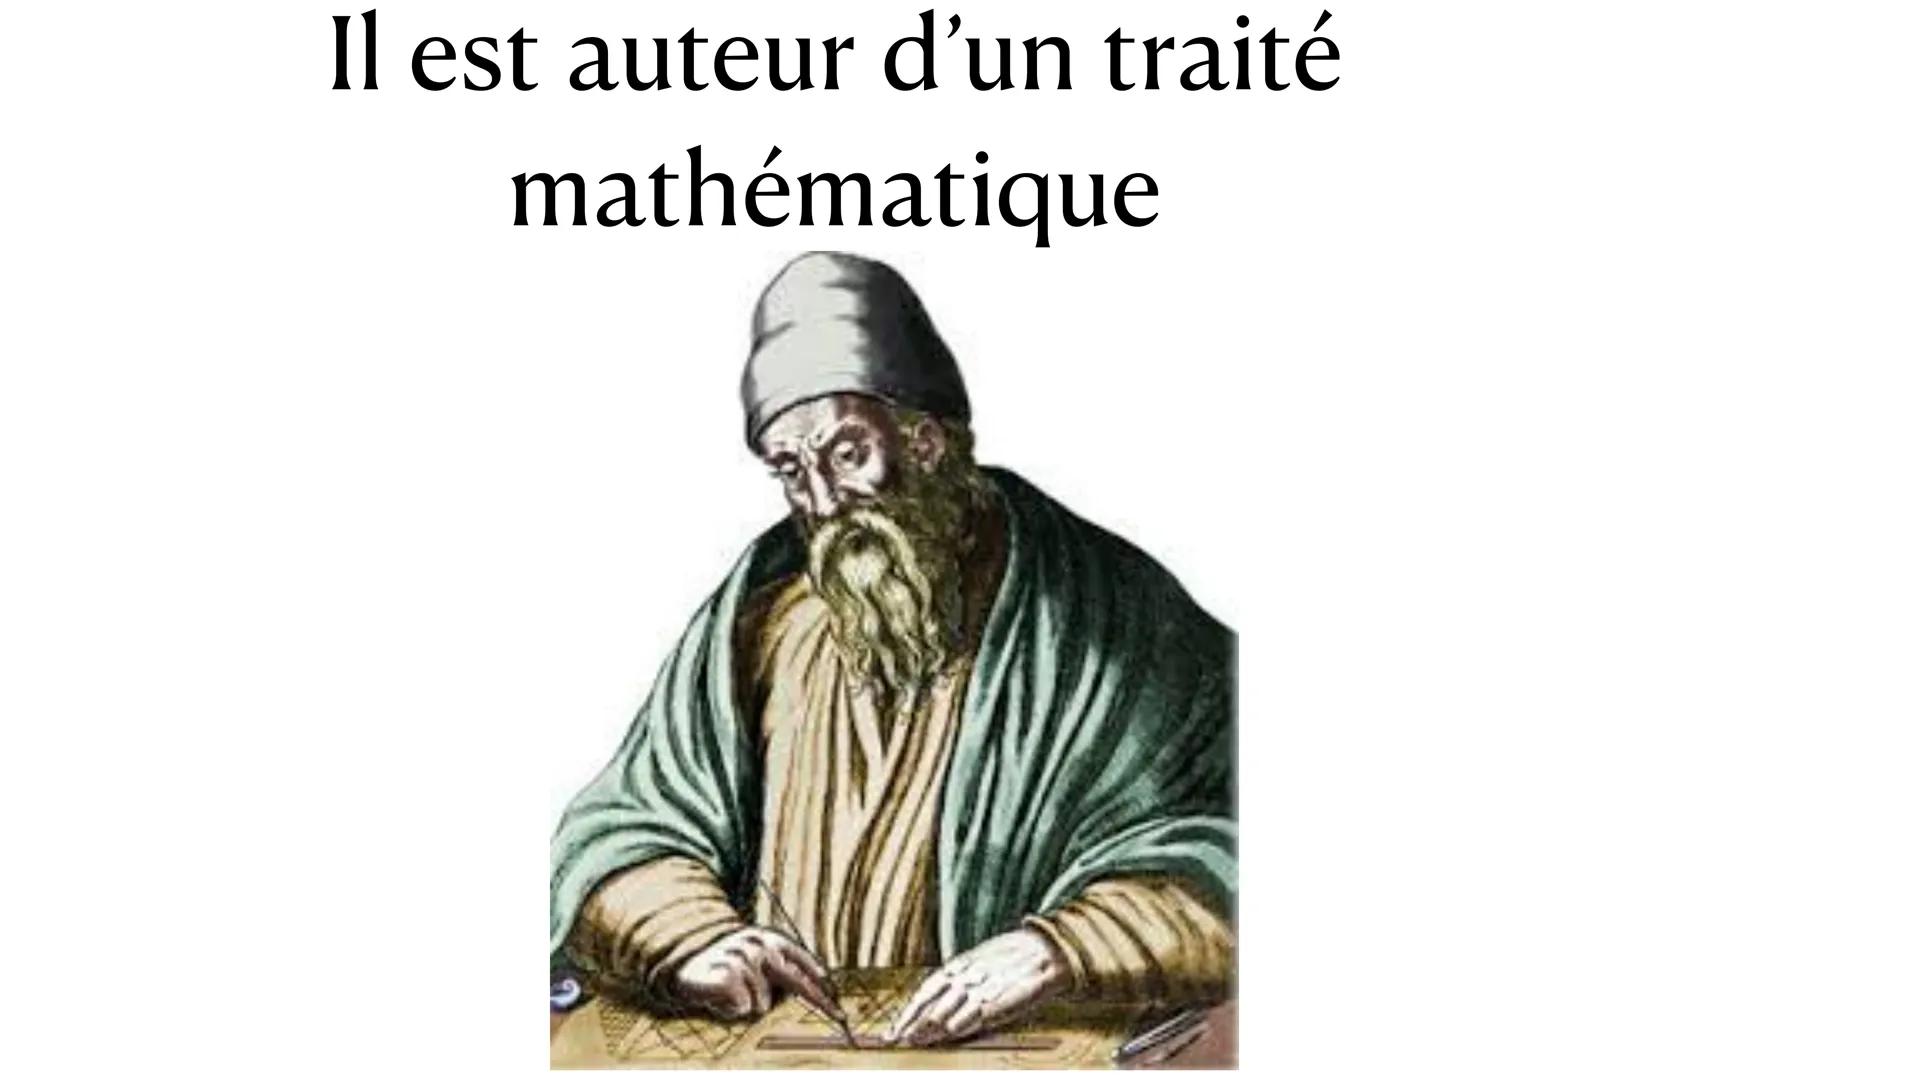 Imen
frideline
Euclide Est un
mathématicien
grec Il est auteur d'un traité
mathématique Il a été actif 300 ans
av. J.-C.
WIS
EVCLIDI MEGAREN